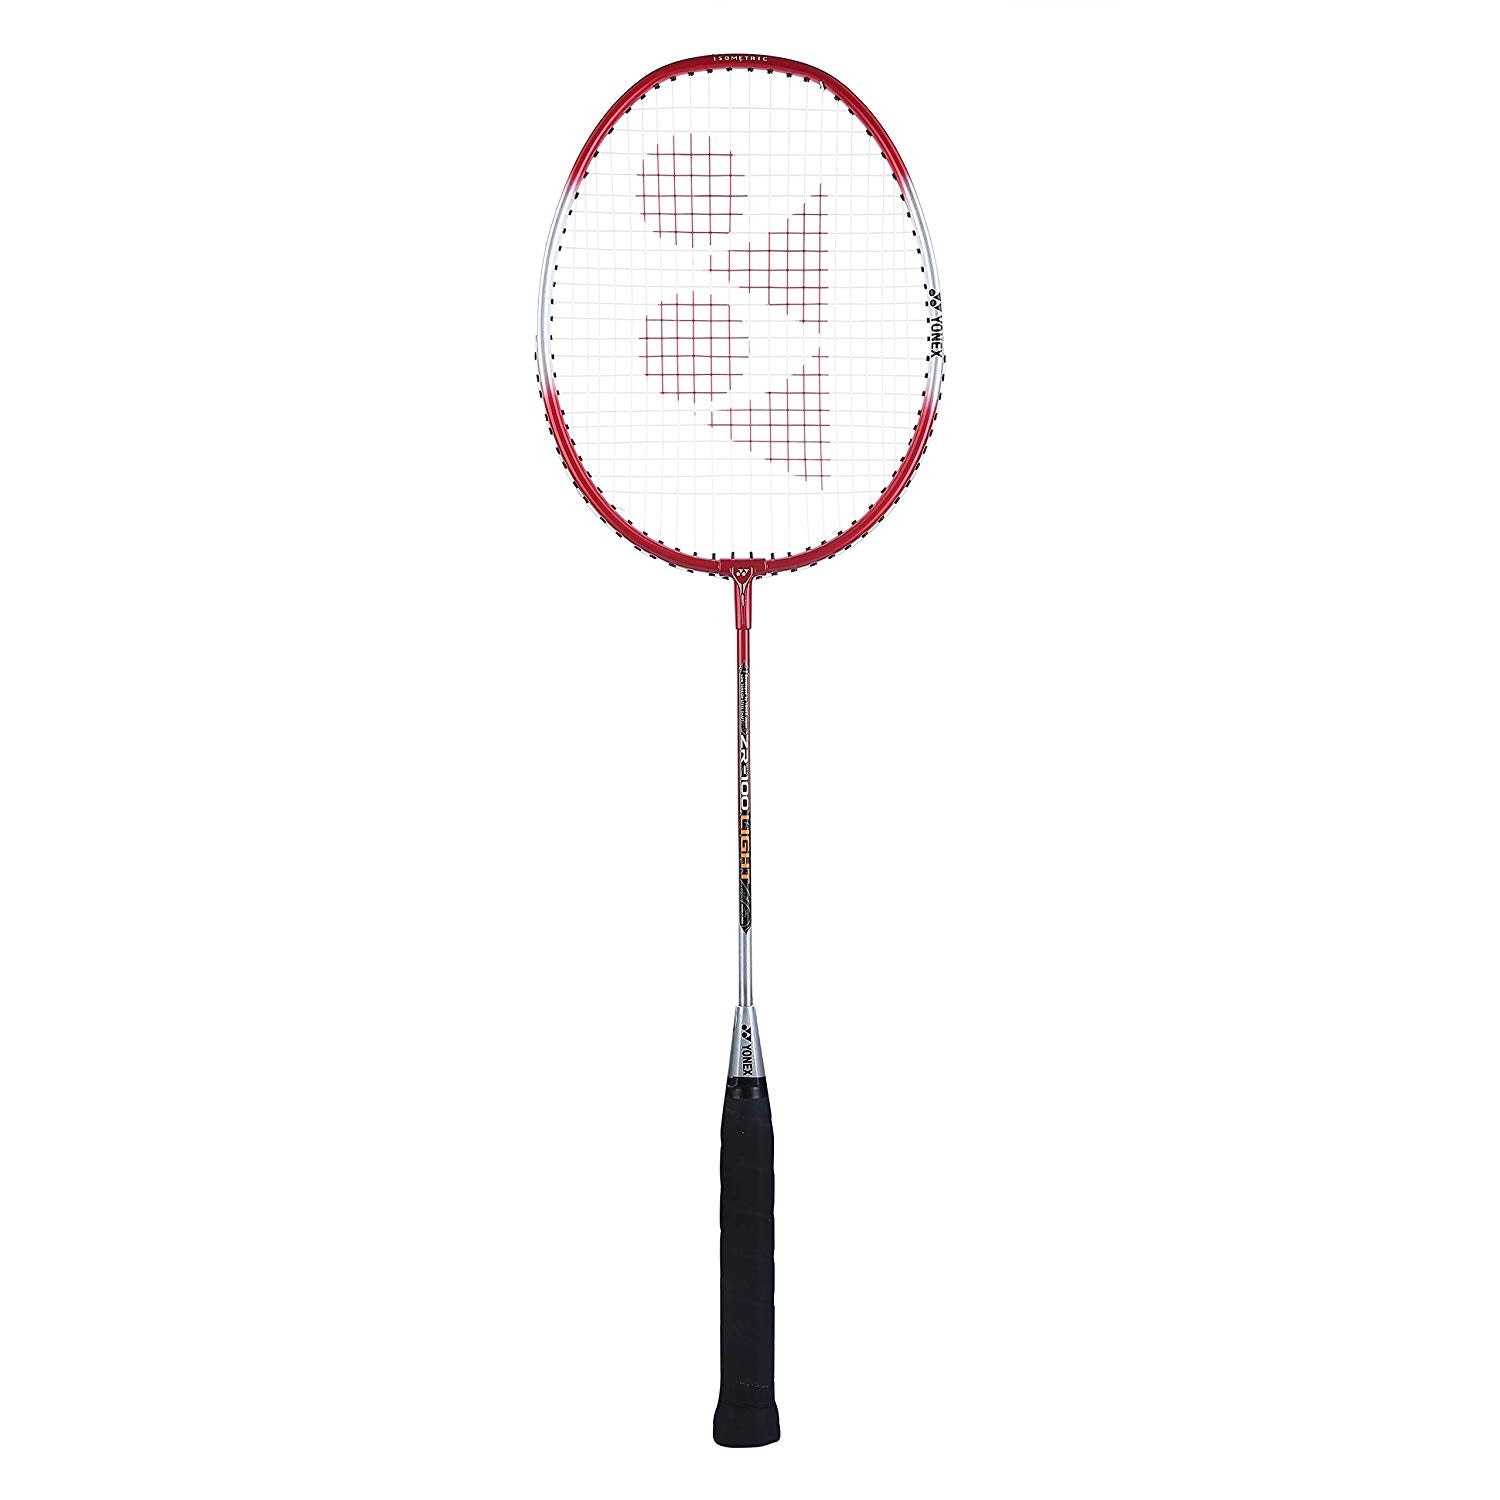 Yonex ZR 100 Light Aluminum Badminton Racquet Strung, Grip Size G4 (Red) - Best Price online Prokicksports.com